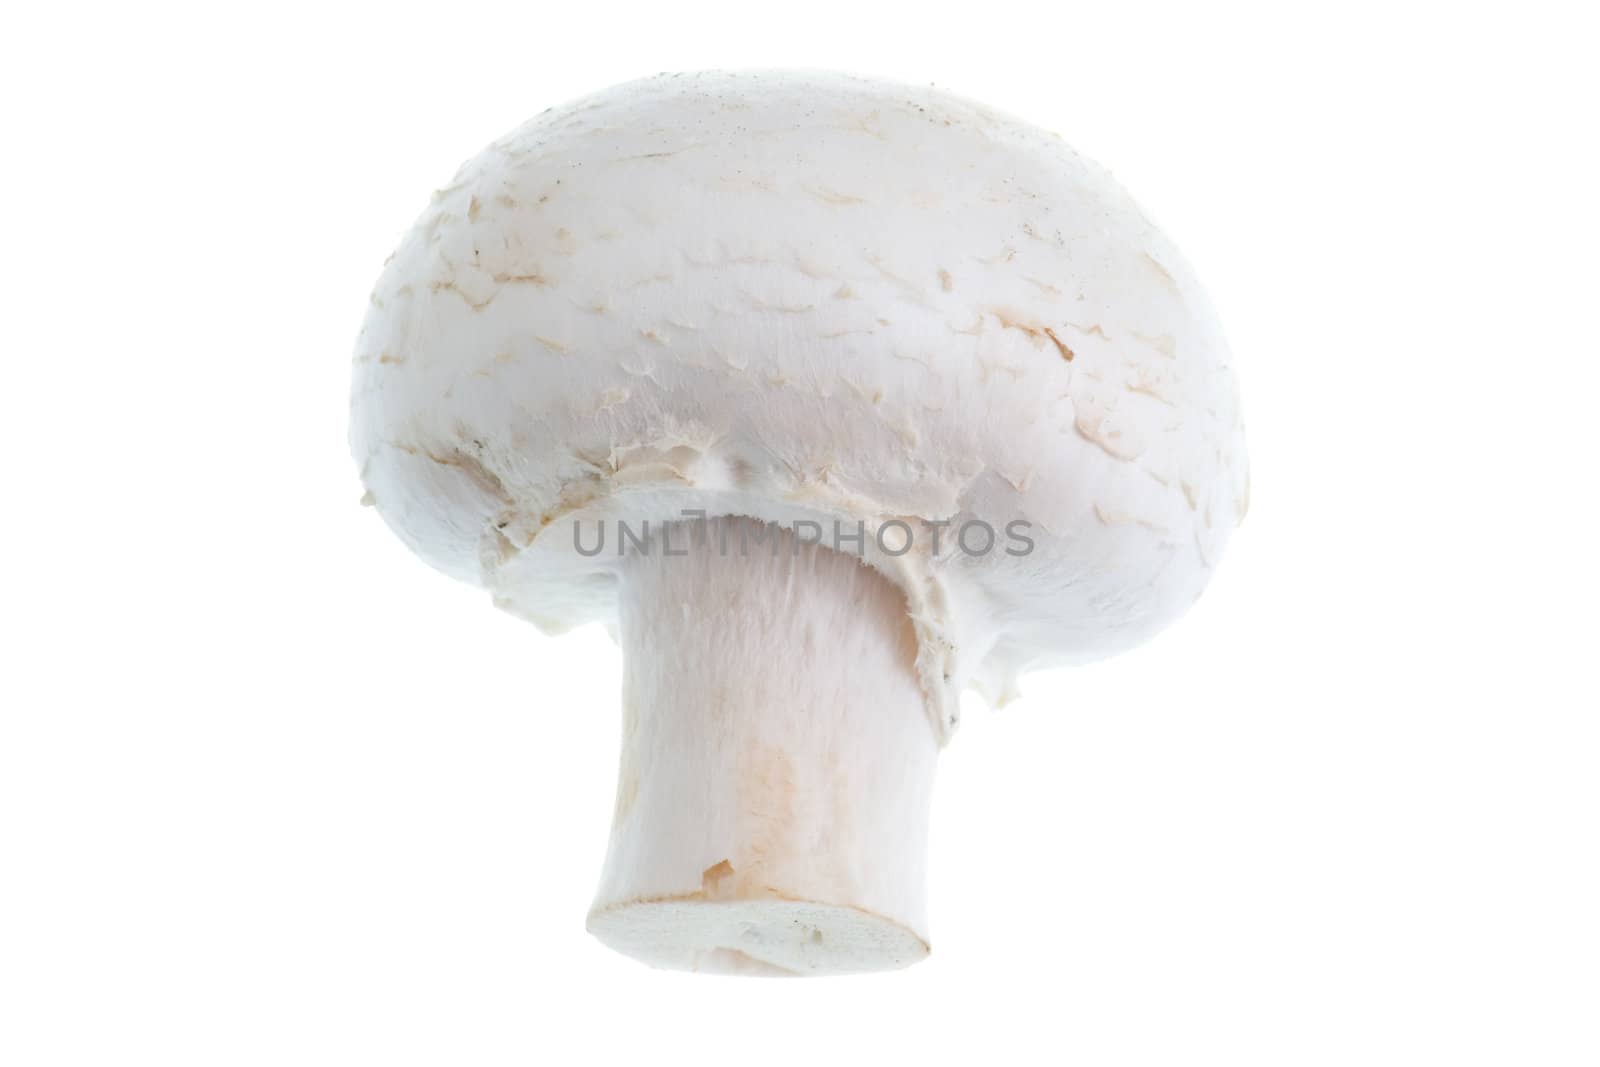 Mushroom. Isolated on White